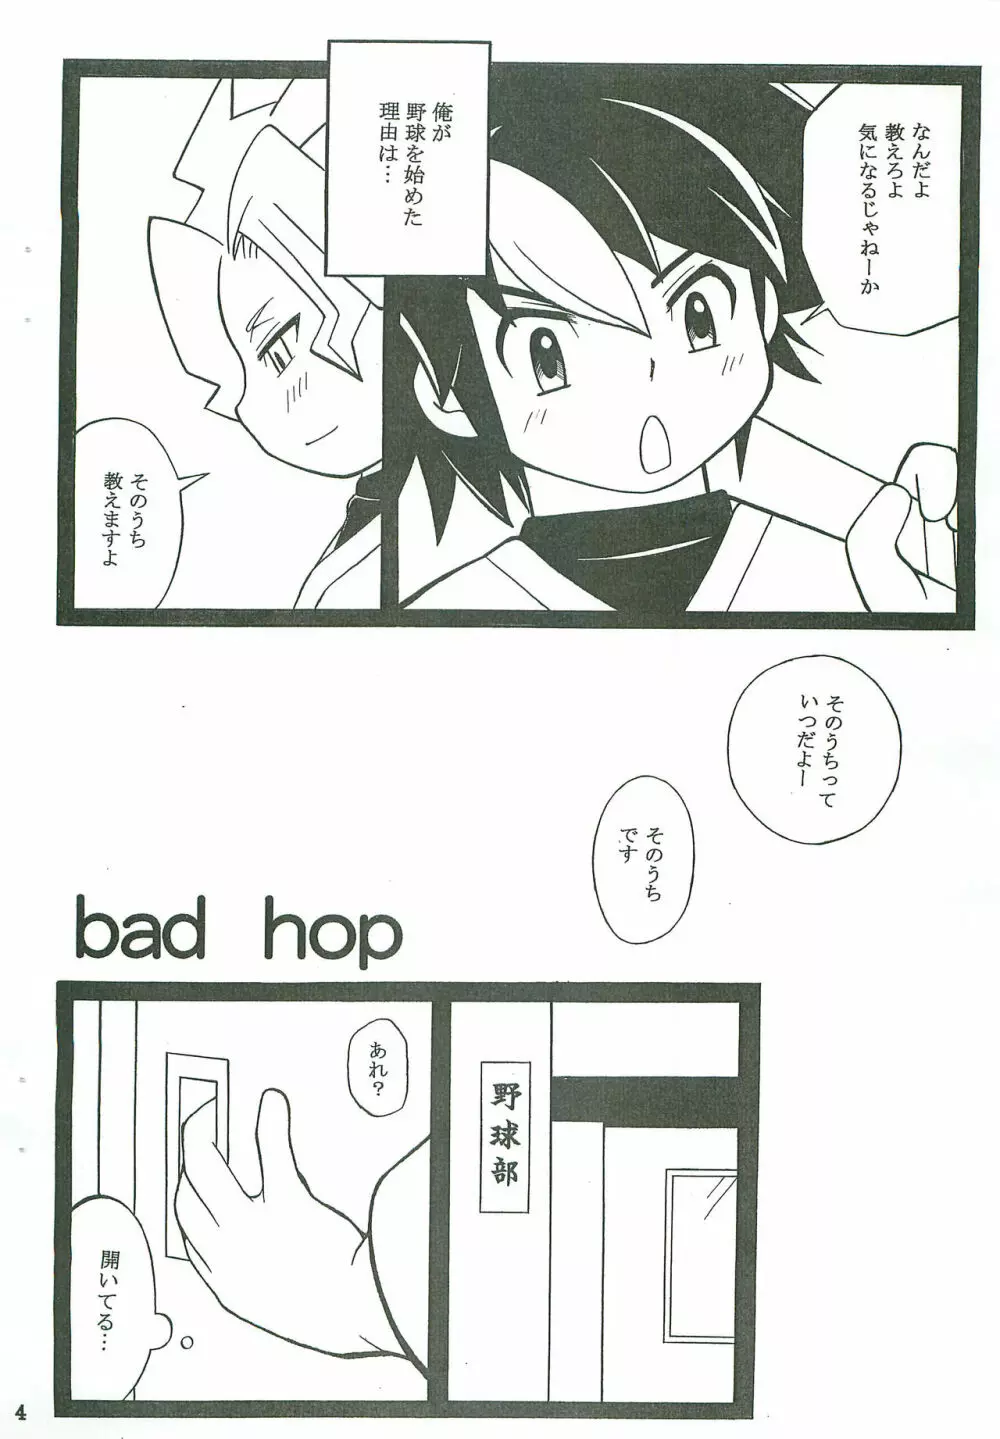 bad hop - page4